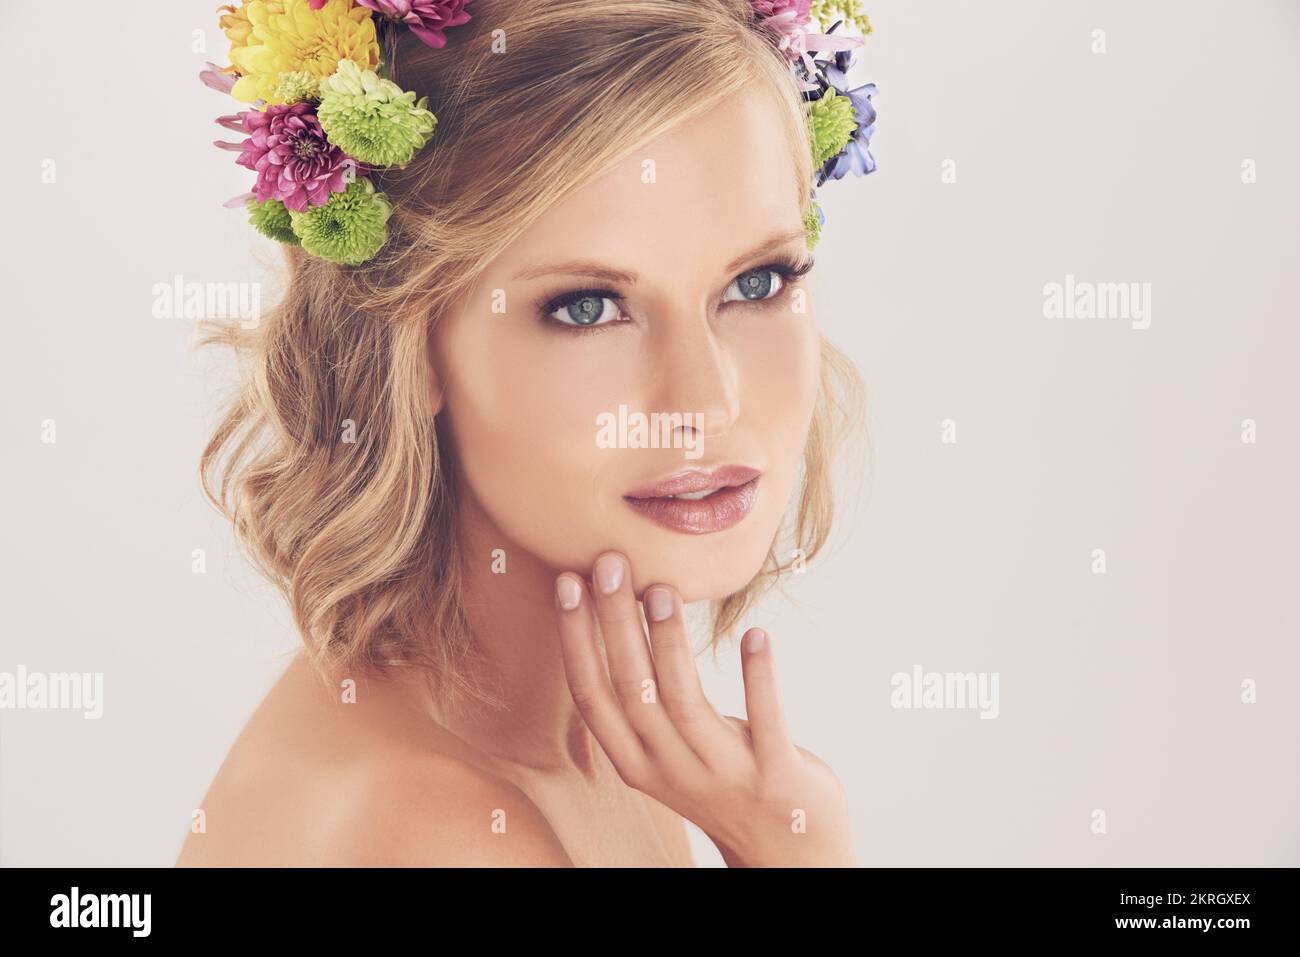 La sua bellezza è naturale come sono... Studio girato di una bella giovane donna con fiori nei suoi capelli. Foto Stock